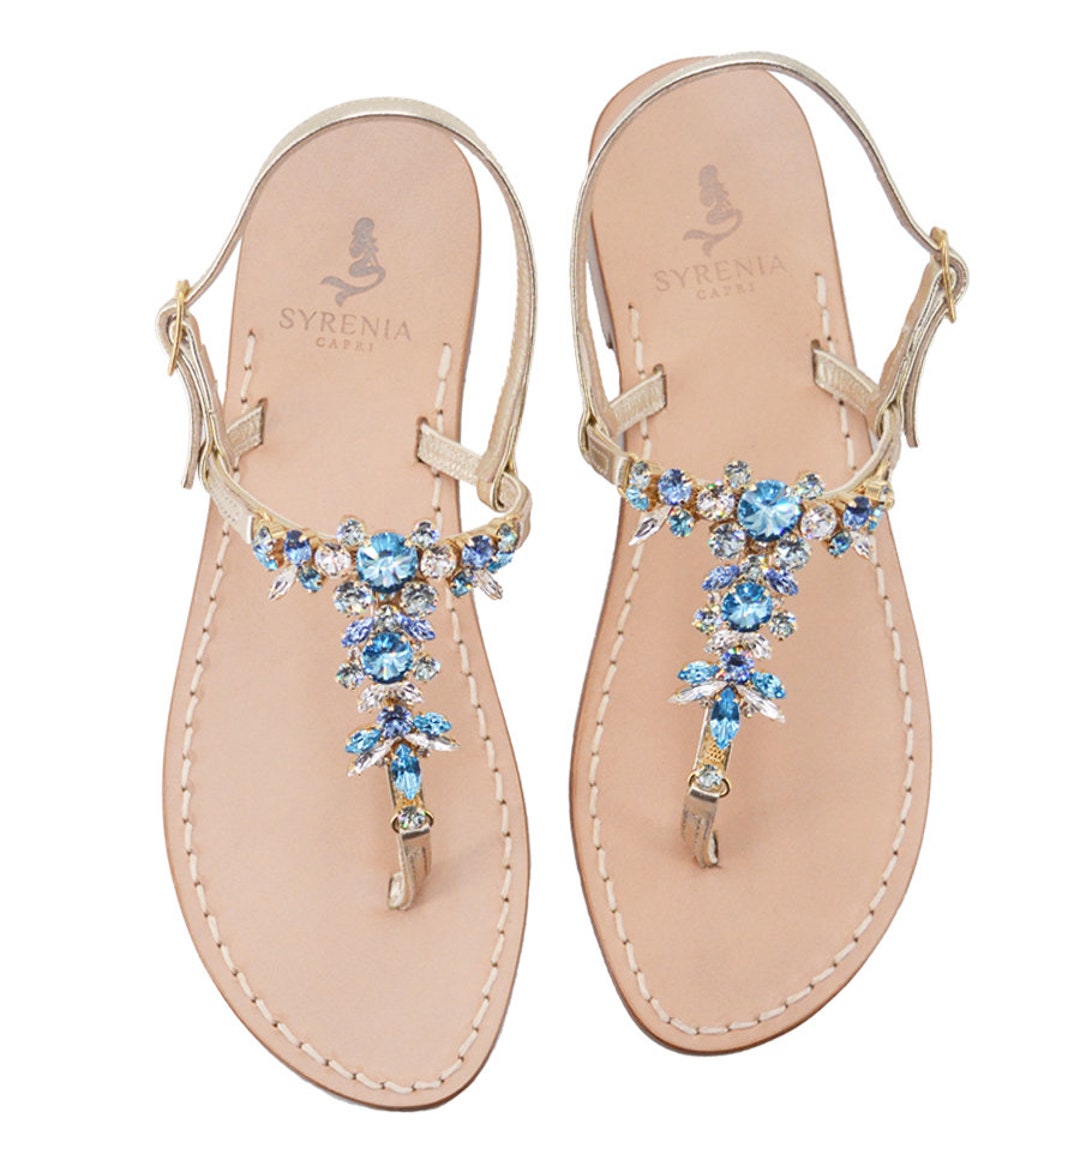 Capri Sandals Jeweled With Leather Embellished With Aquamarine - Etsy